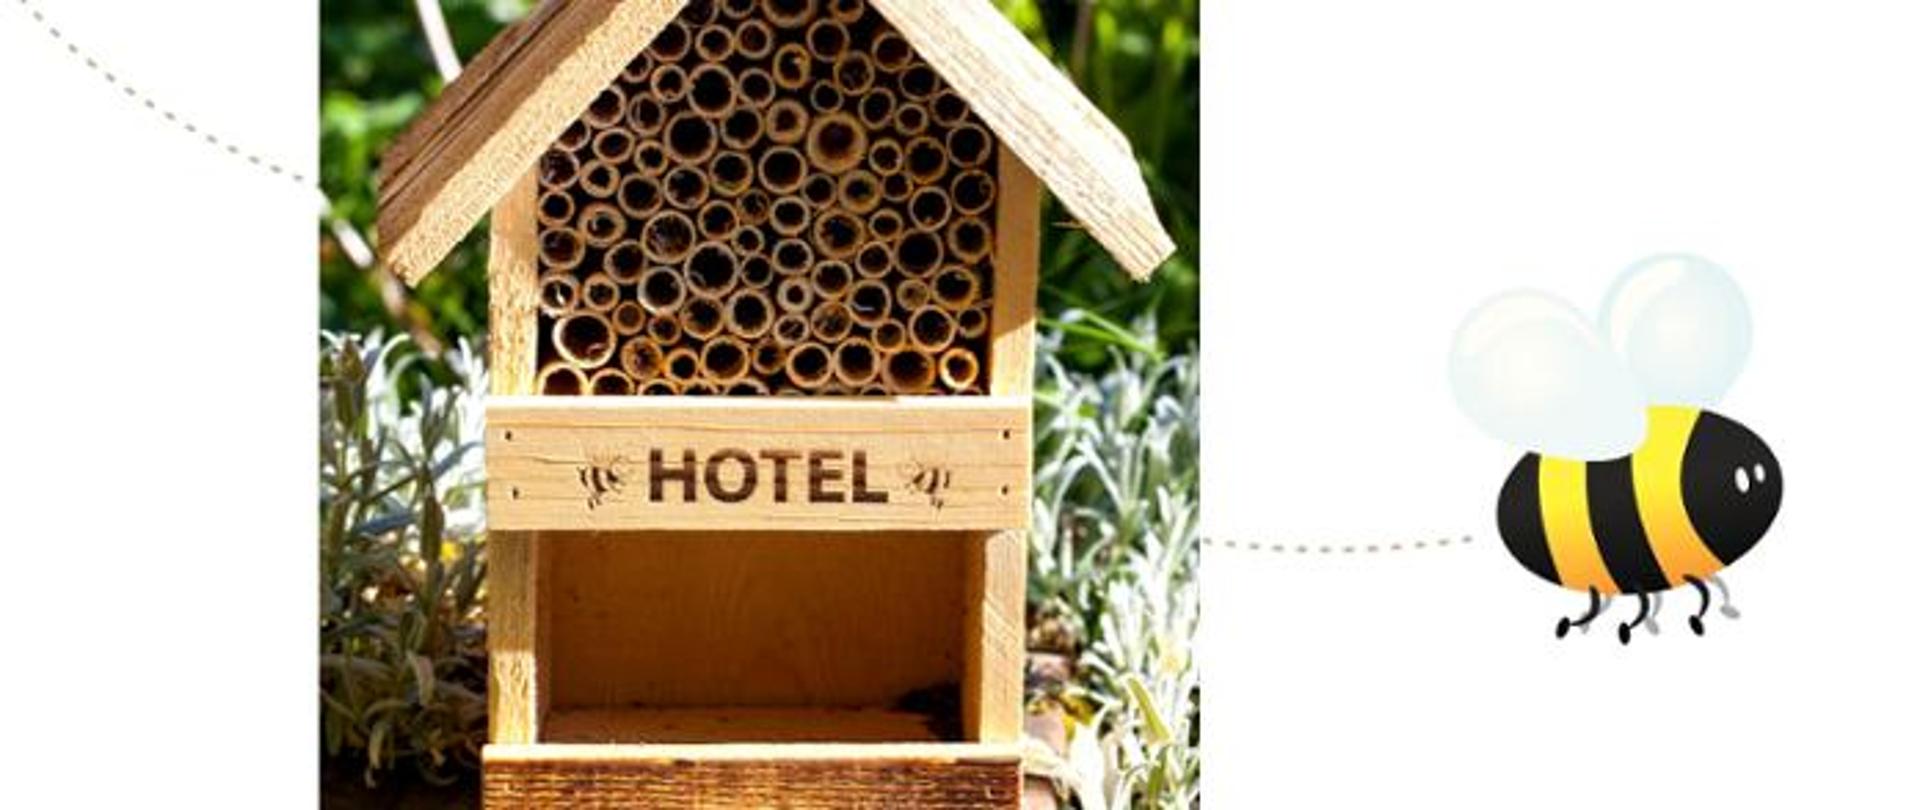 Zdjęcie przedstawiające hotel dla pszczół i owadów w ogrodzie. Jedna ikonografika z prawej strony przedstawia pszczołę.